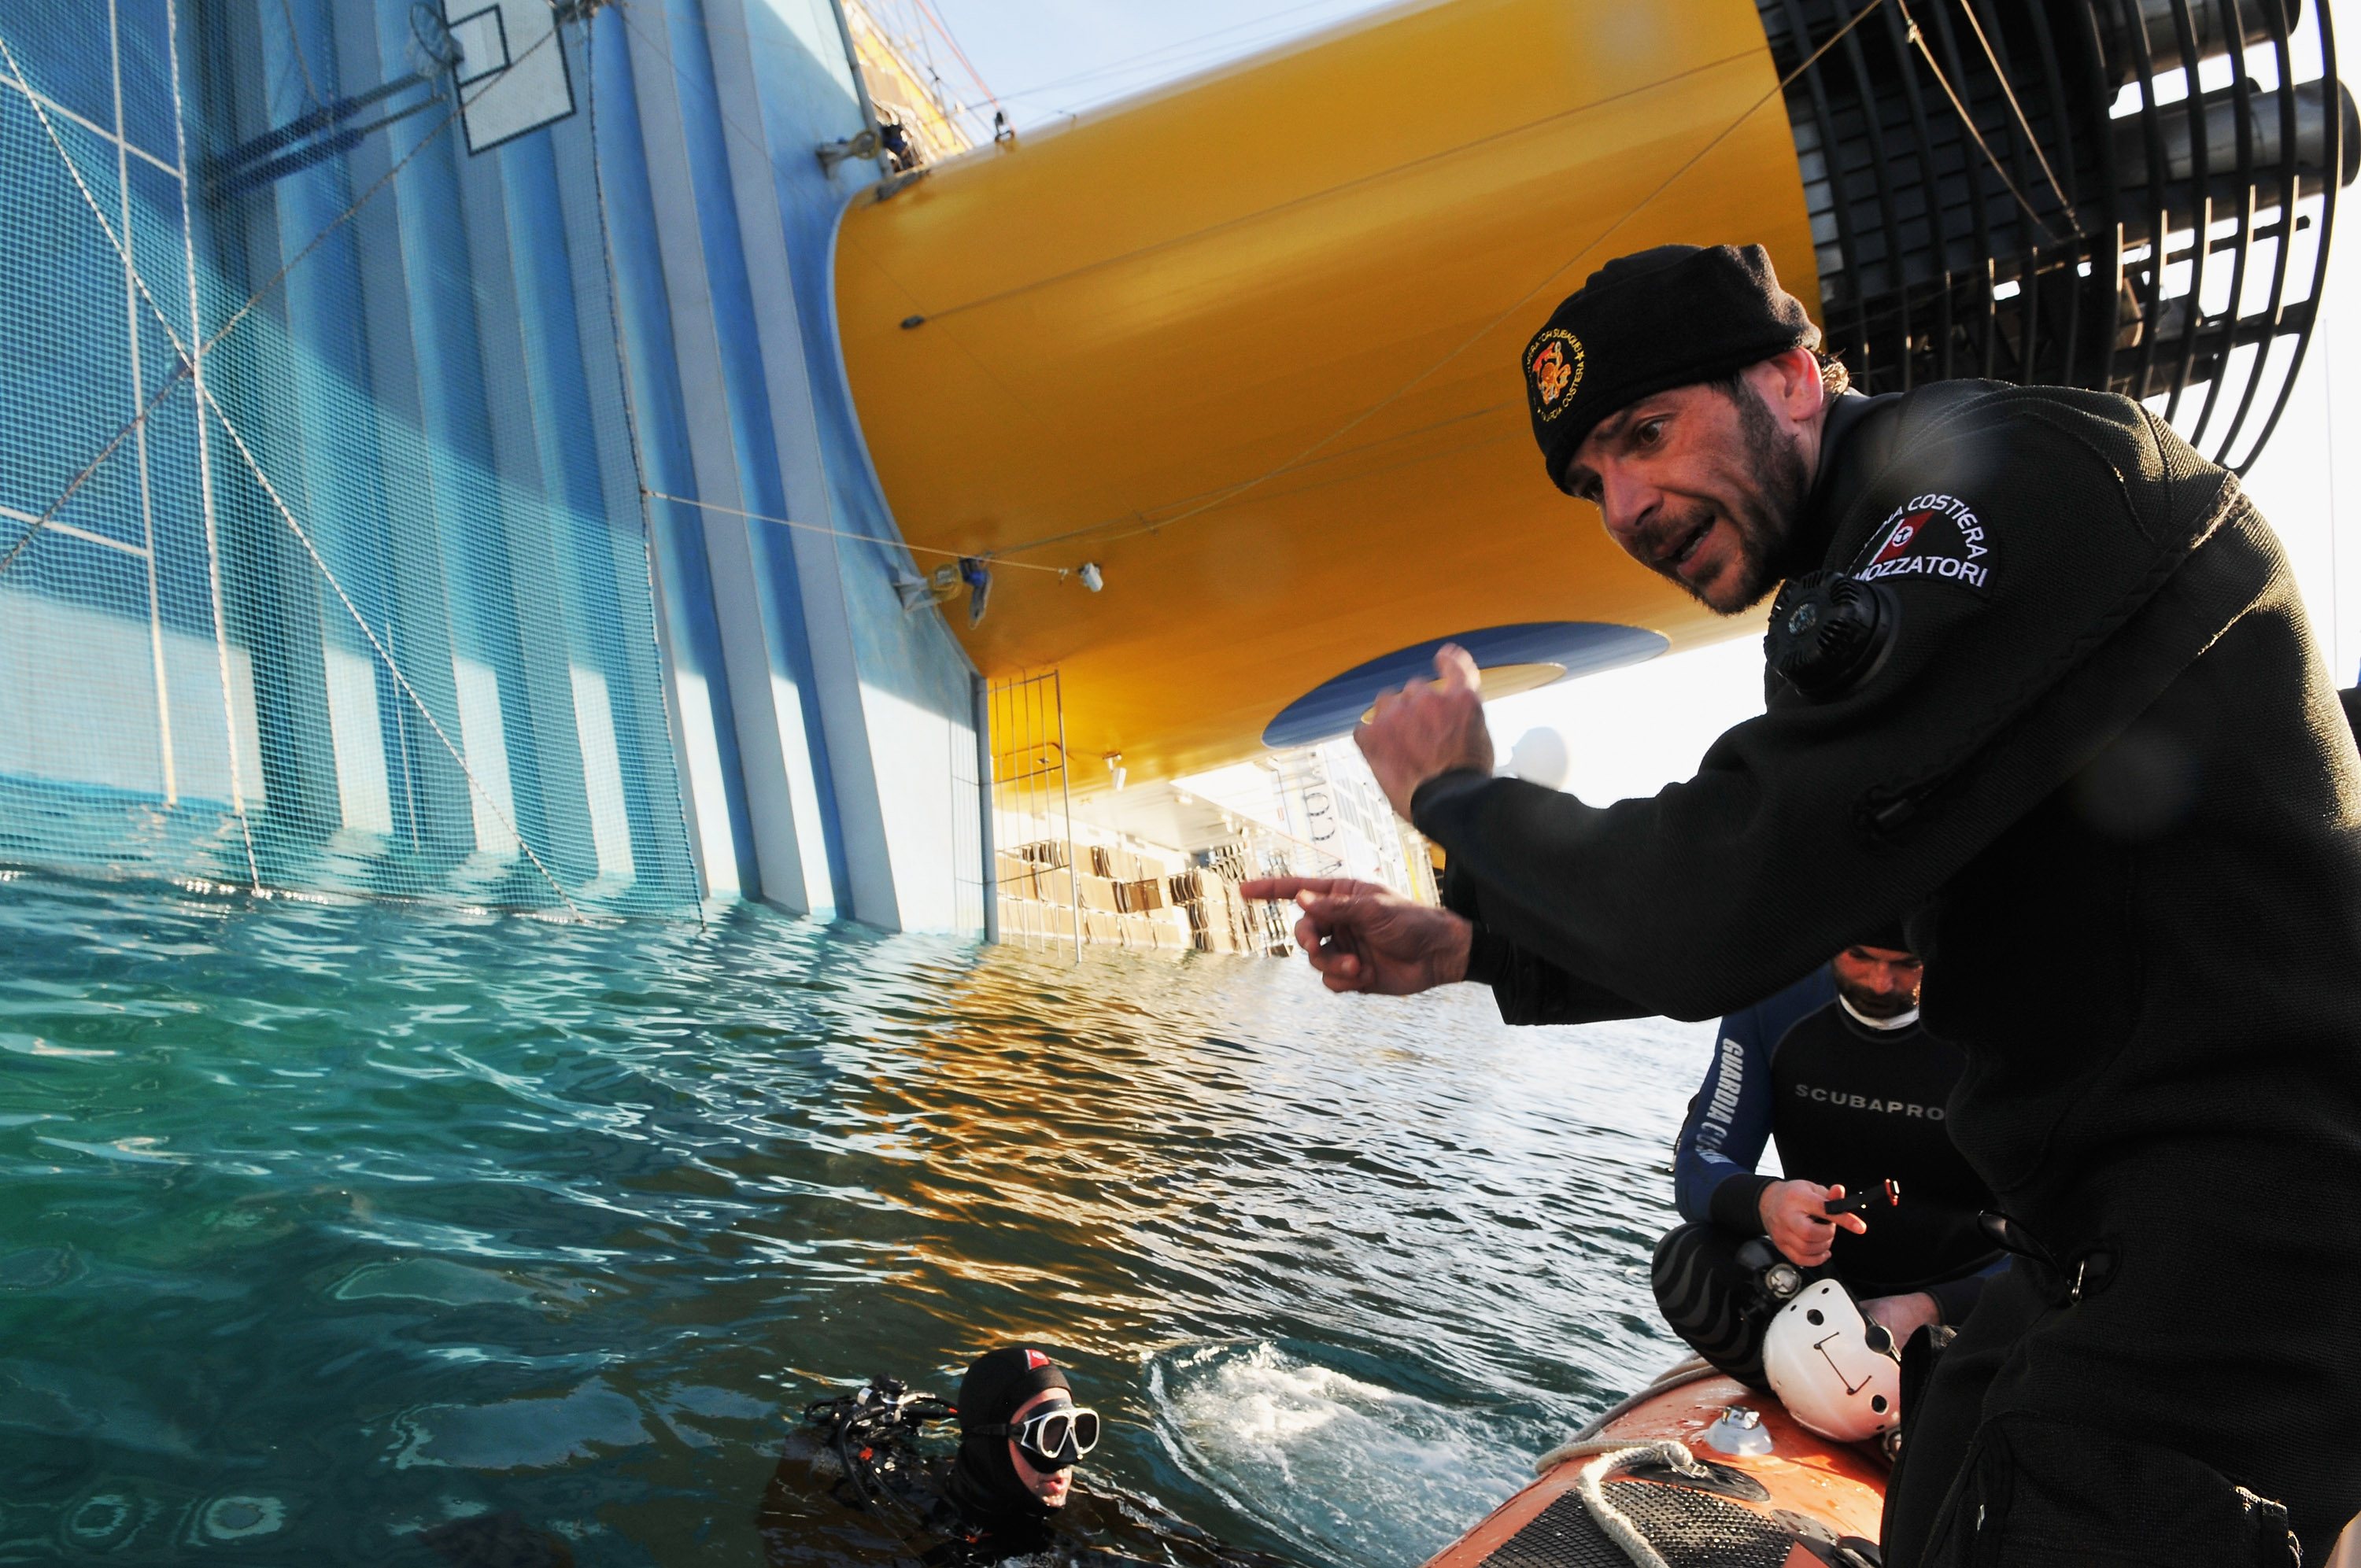 Operações de busca no Costa Concordia, oito dias depois do desastre, que levaram à descoberta do corpo de uma passageira dentro do navio